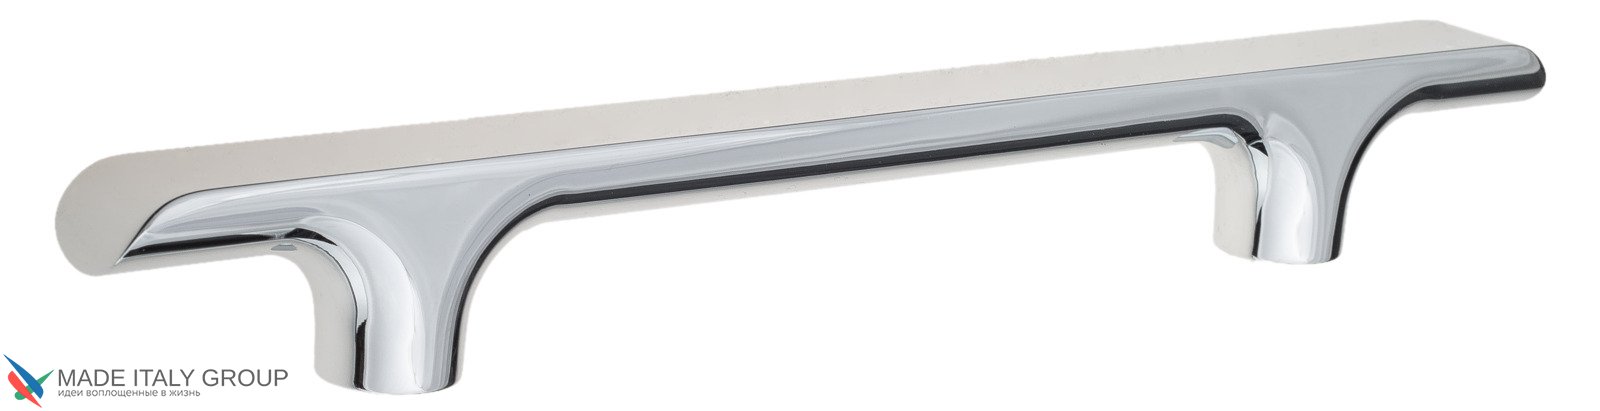 Ручка скоба модерн COLOMBO DESIGN F137D-CR полированный хром 96 мм